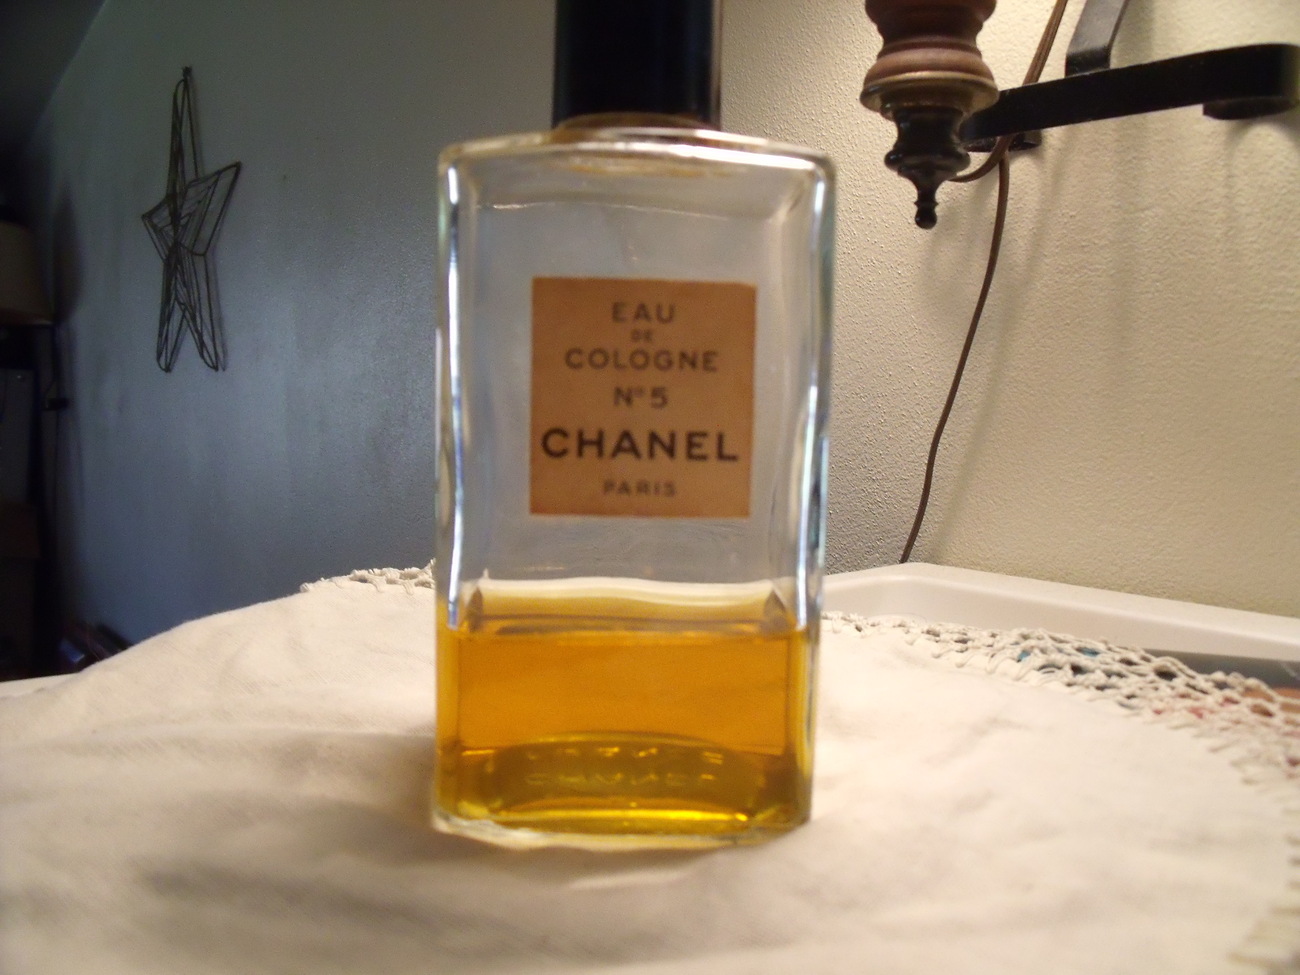 Chanel No. 5 eau de Cologne Paris Vintage Bottle - $100.00